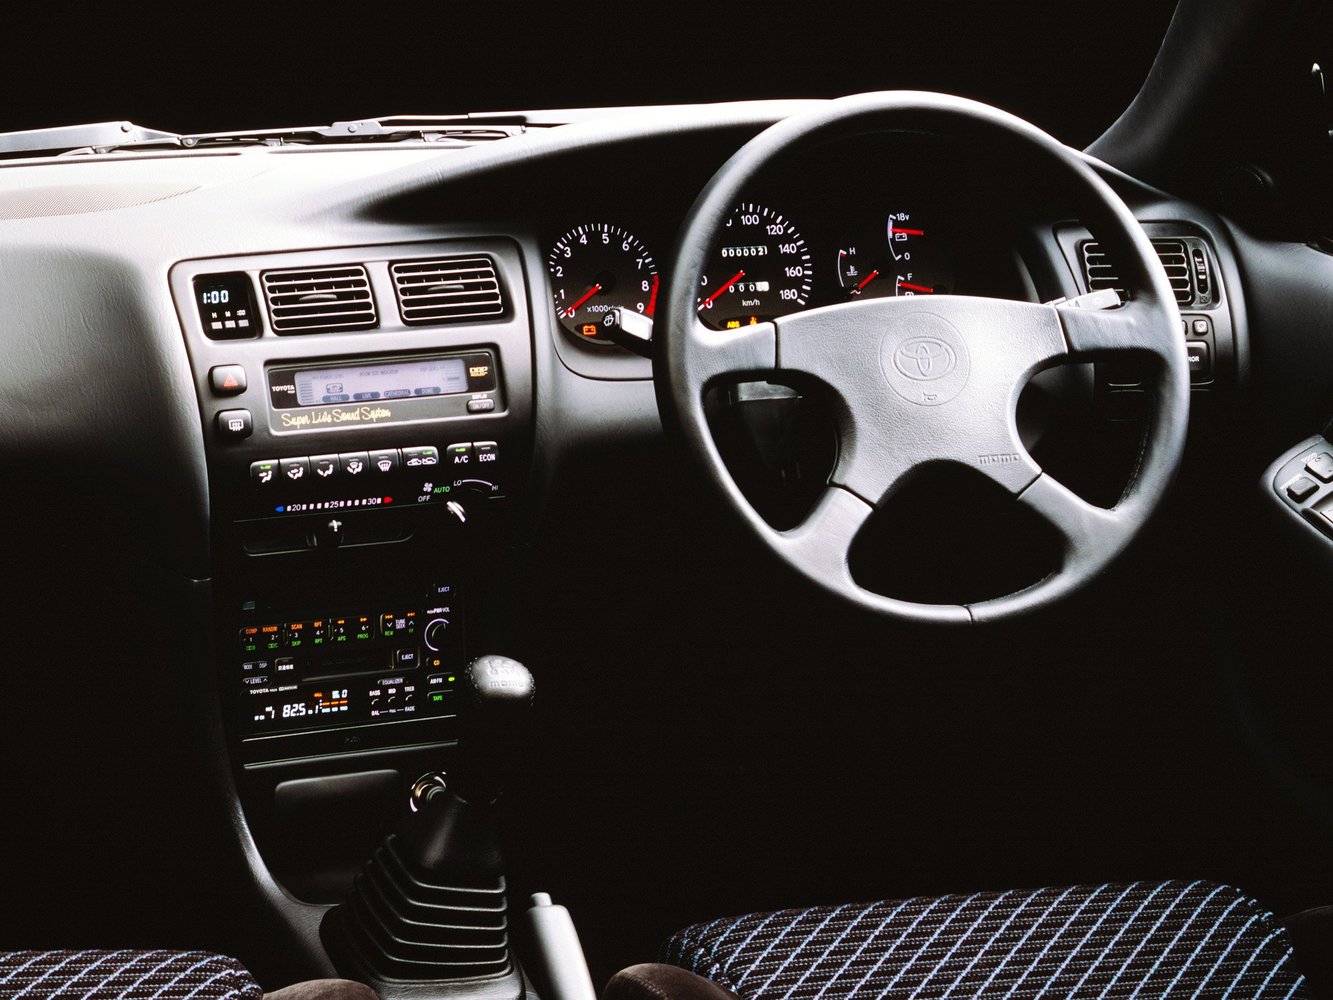 хэтчбек 3 дв. Toyota Corolla 1991 - 1997г выпуска модификация 1.3 AT (75 л.с.)